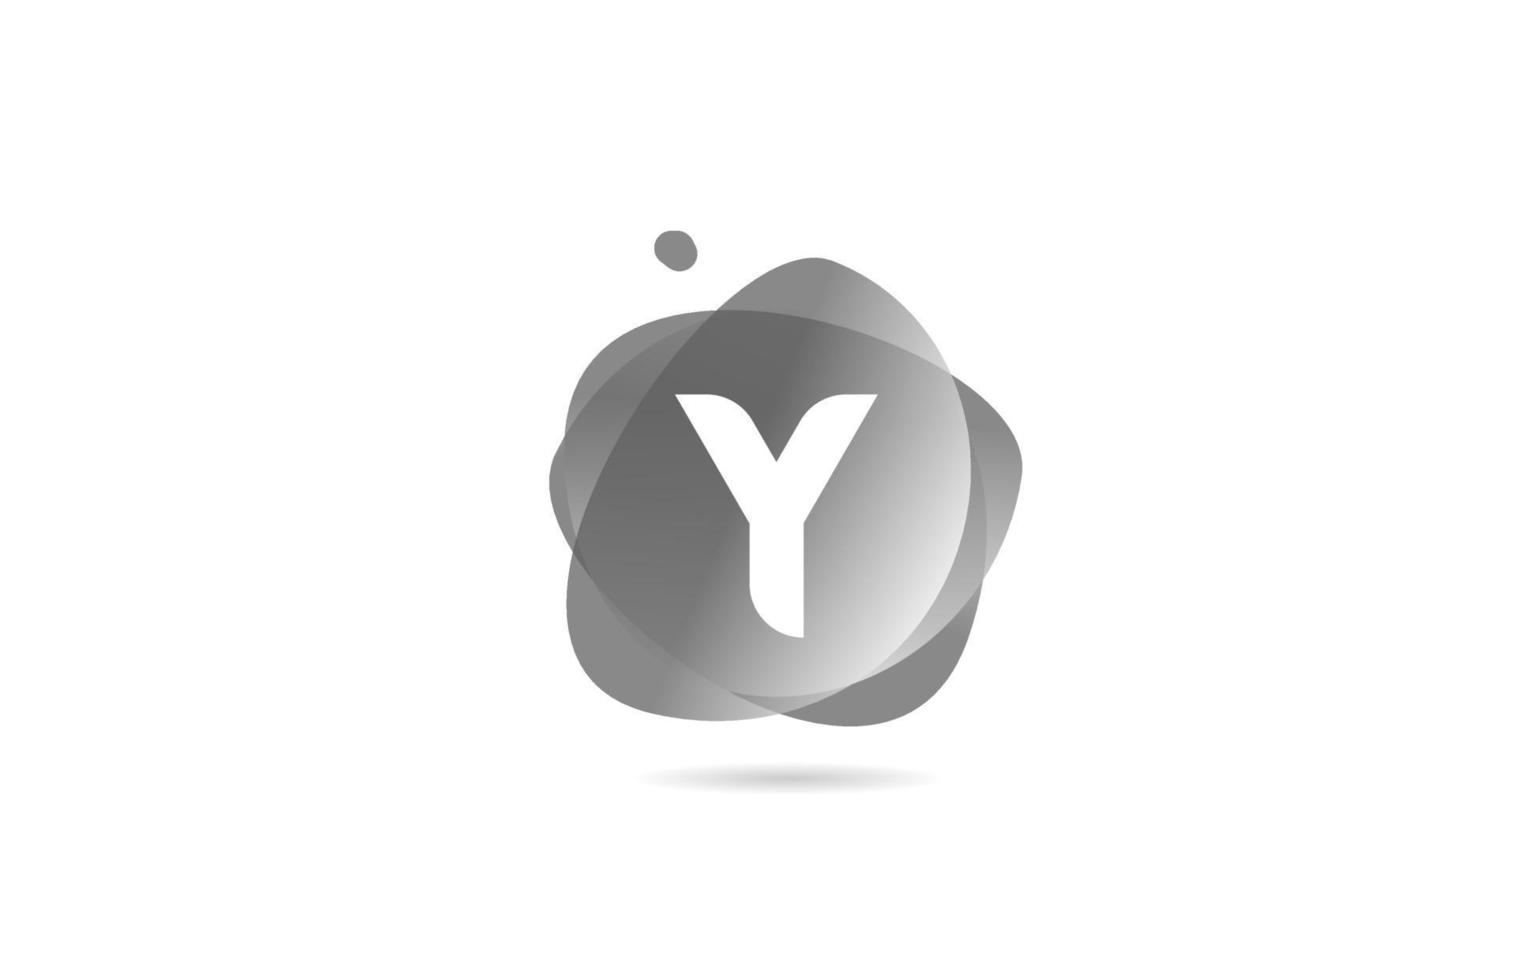 Schwarz-Weiß-Y-Alphabet-Buchstaben-Logo für Unternehmen und Unternehmen mit Farbverlaufsdesign. Pastellfarben für Corporate Identity vektor